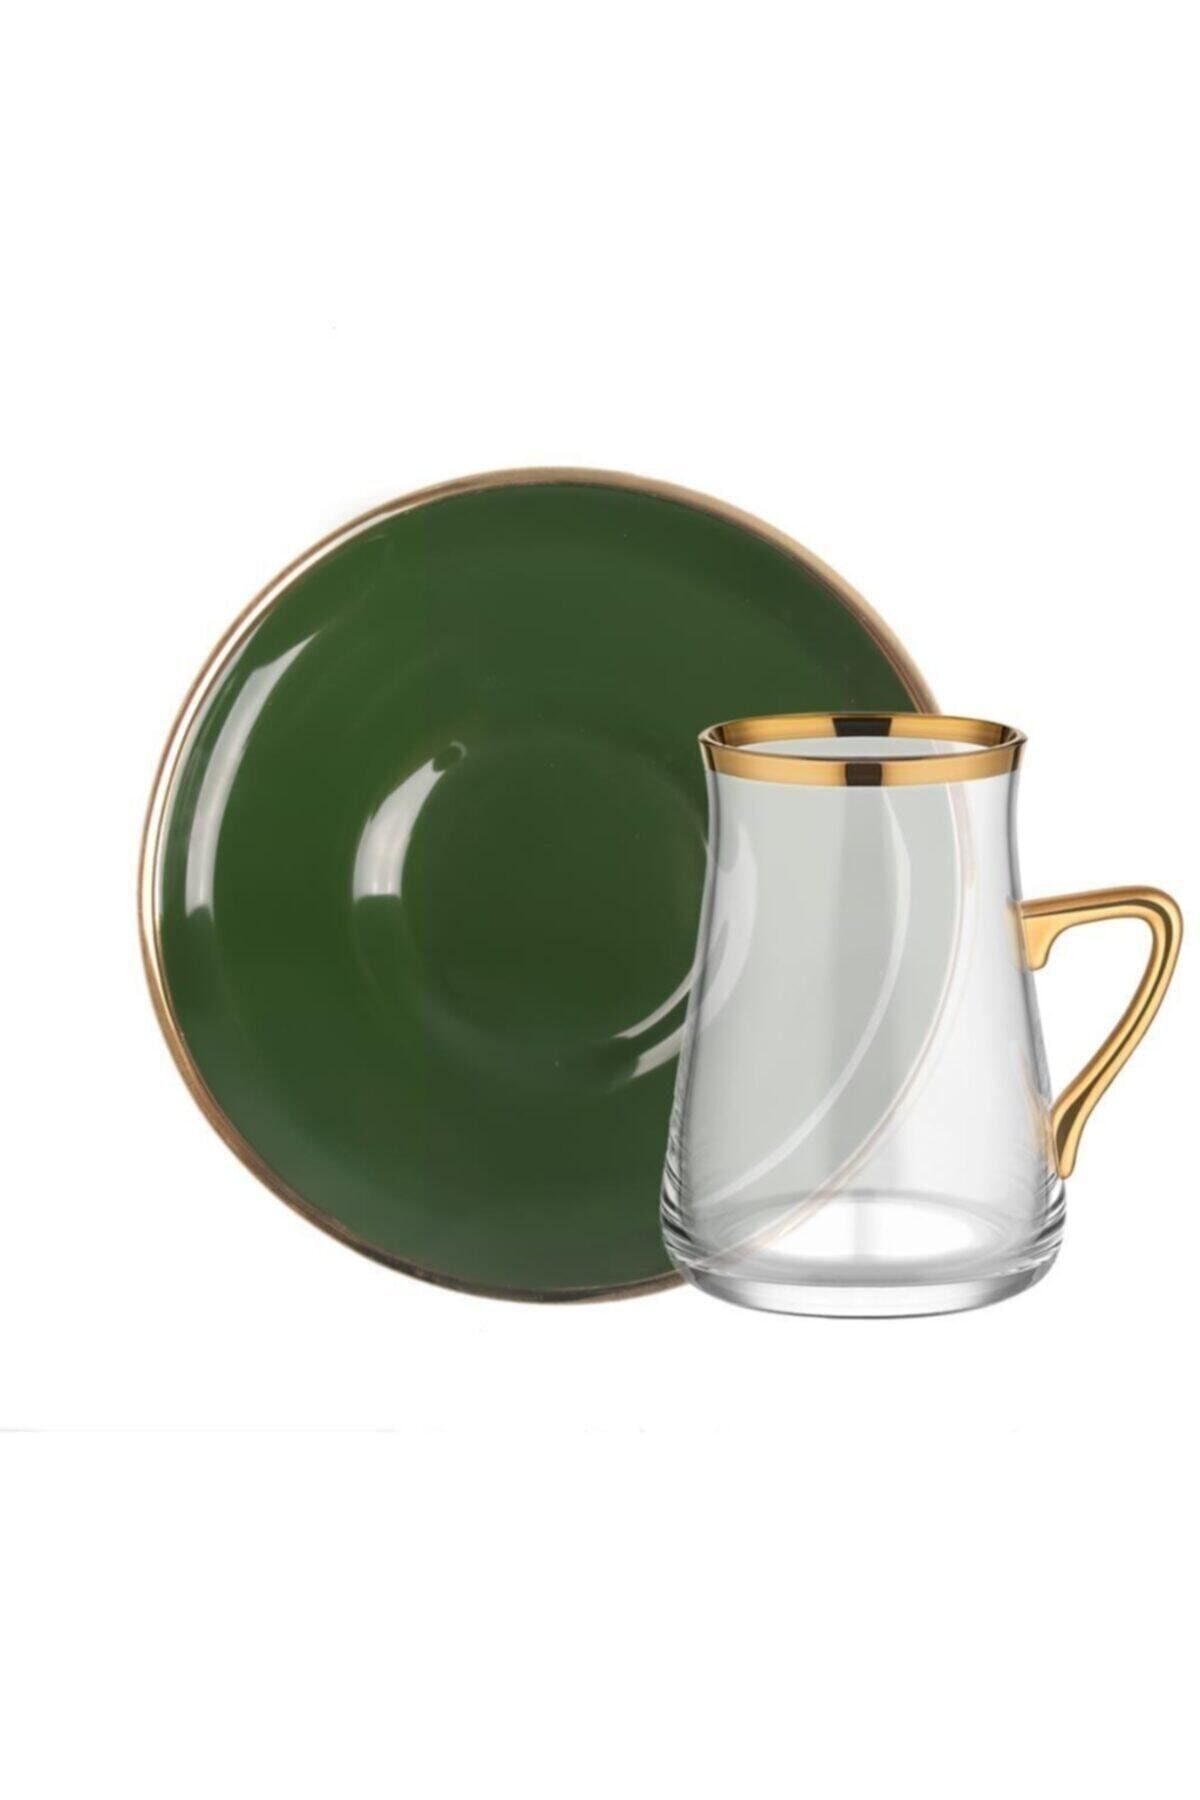 Glore Solıd Yeşil Altın Kulplu 6 Kişilik Çay Seti